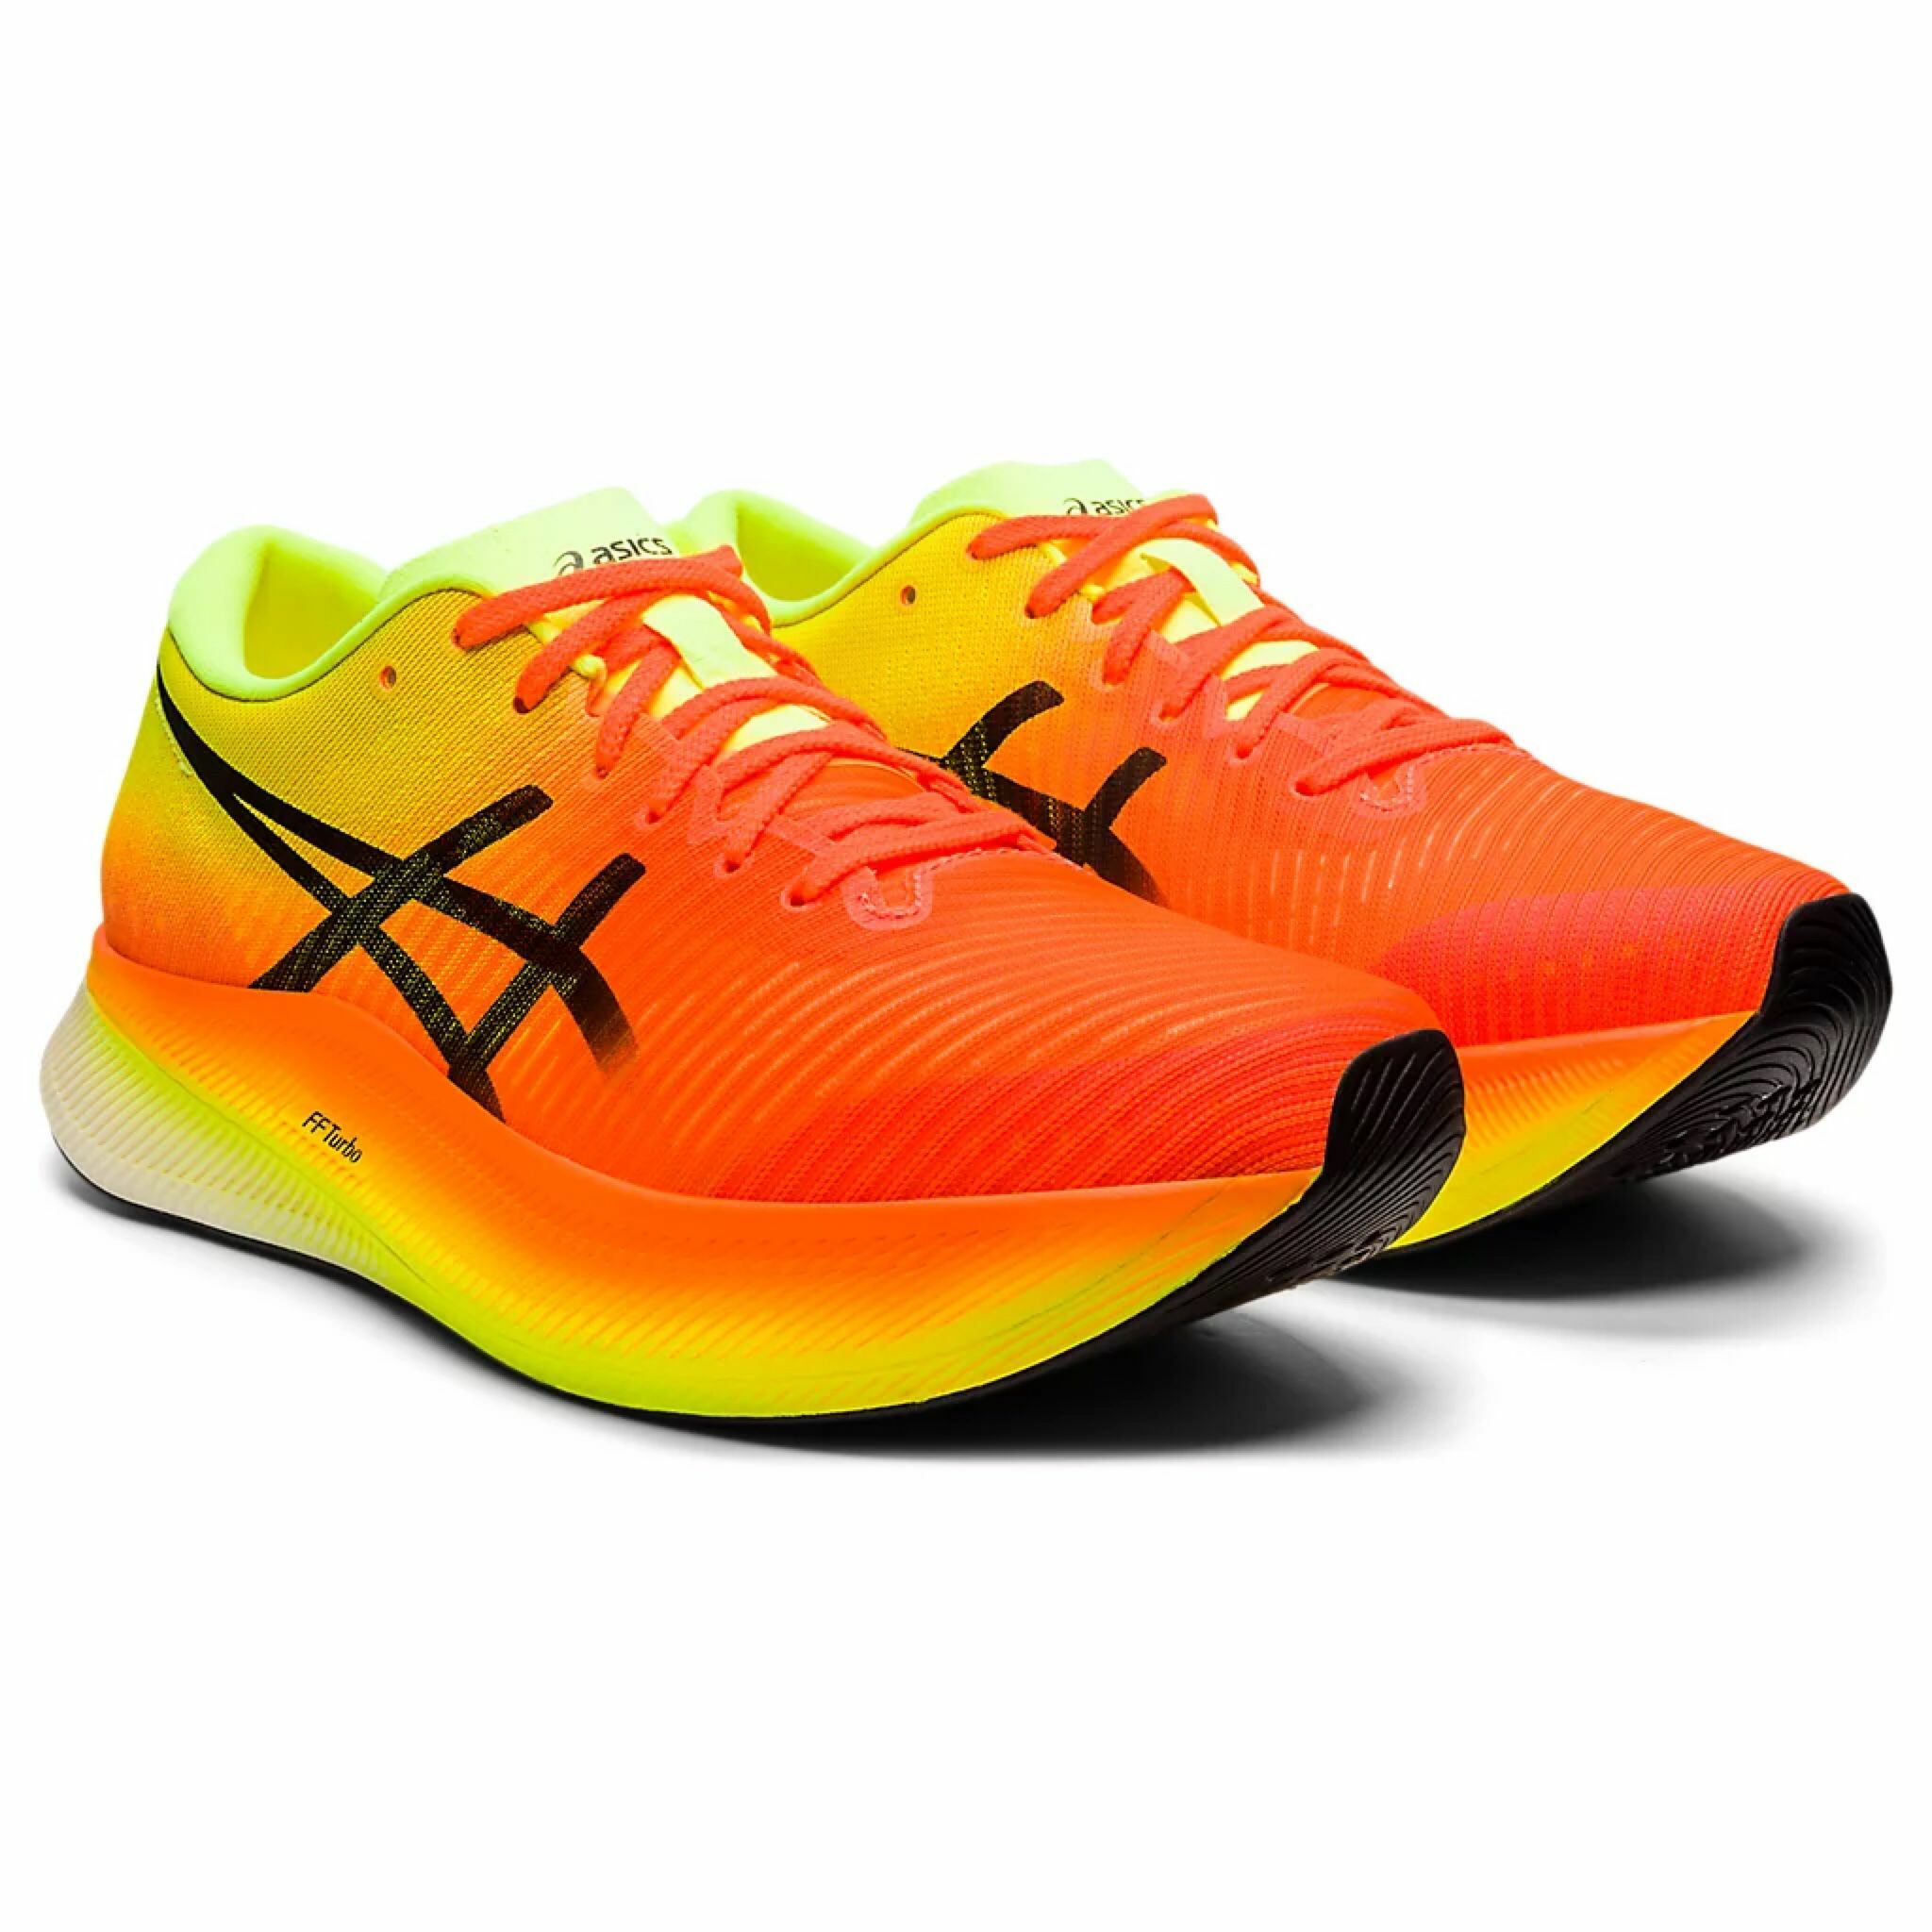 💥日本直送】Asics METASPEED SKY 女士運動波鞋跑鞋日本直送橙黃色